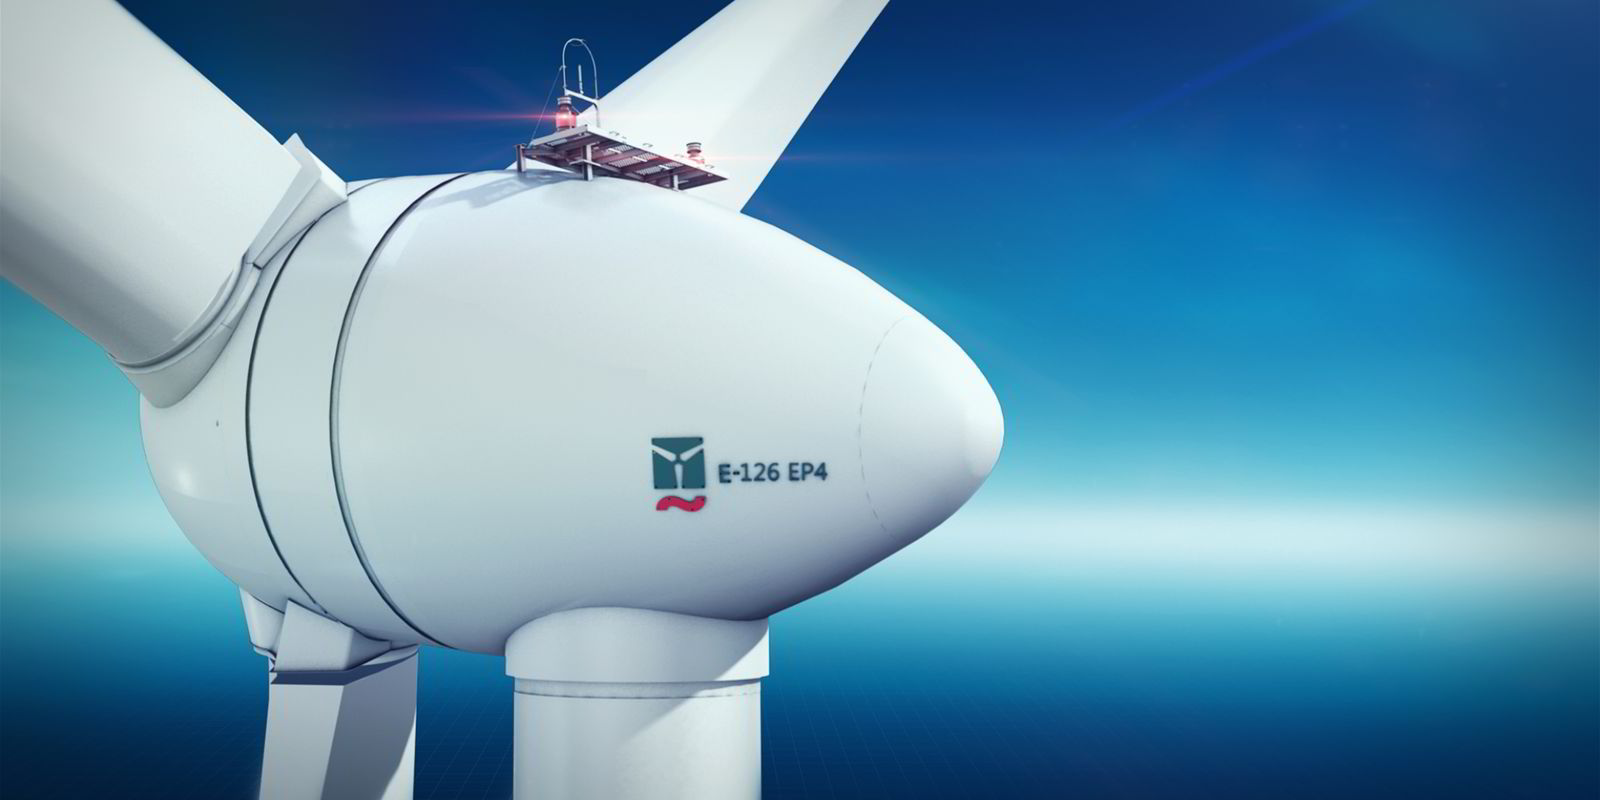 New milestone in the evolution of wind turbine maker Enercon